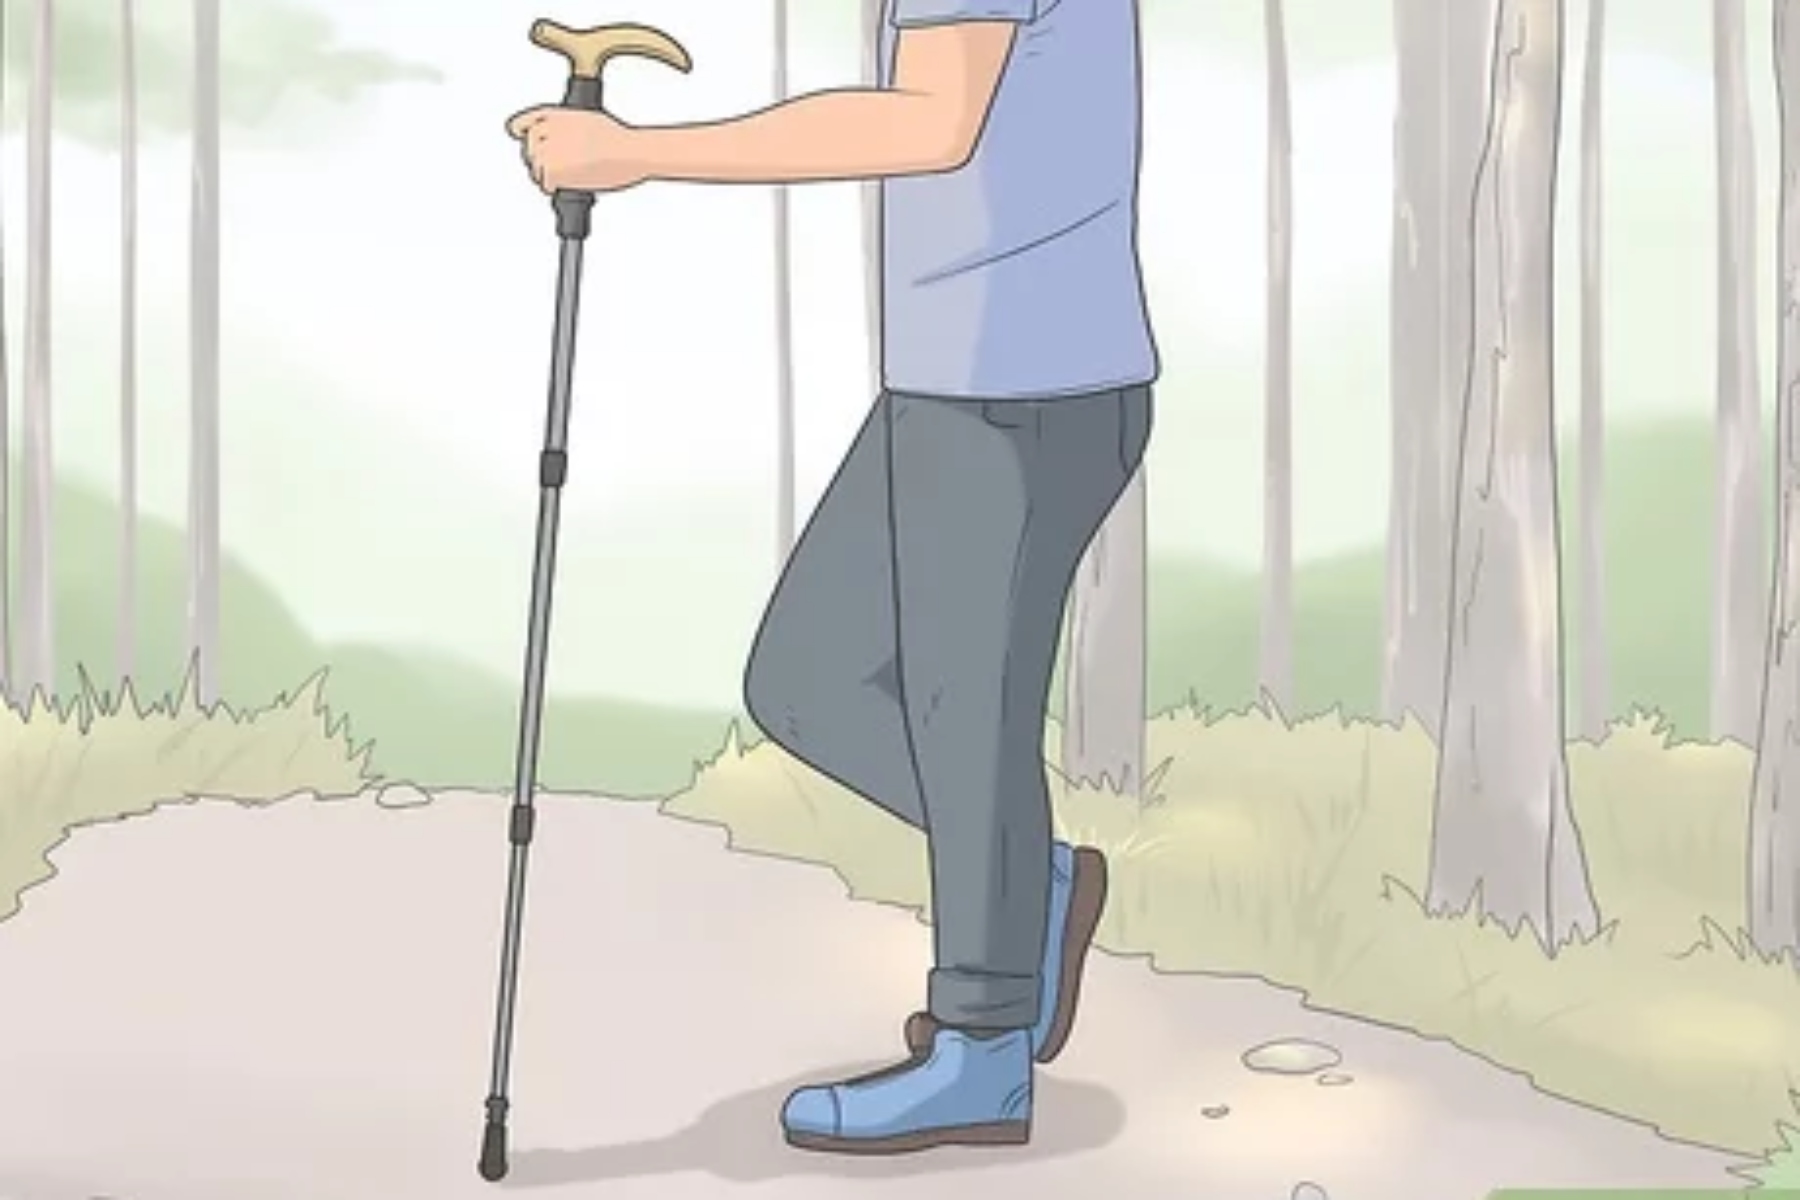 Περπάτημα μαγκούρα: Πώς να φροντίσετε τον εαυτό σας αν περπατάτε με την βοήθεια μαγκούρας;